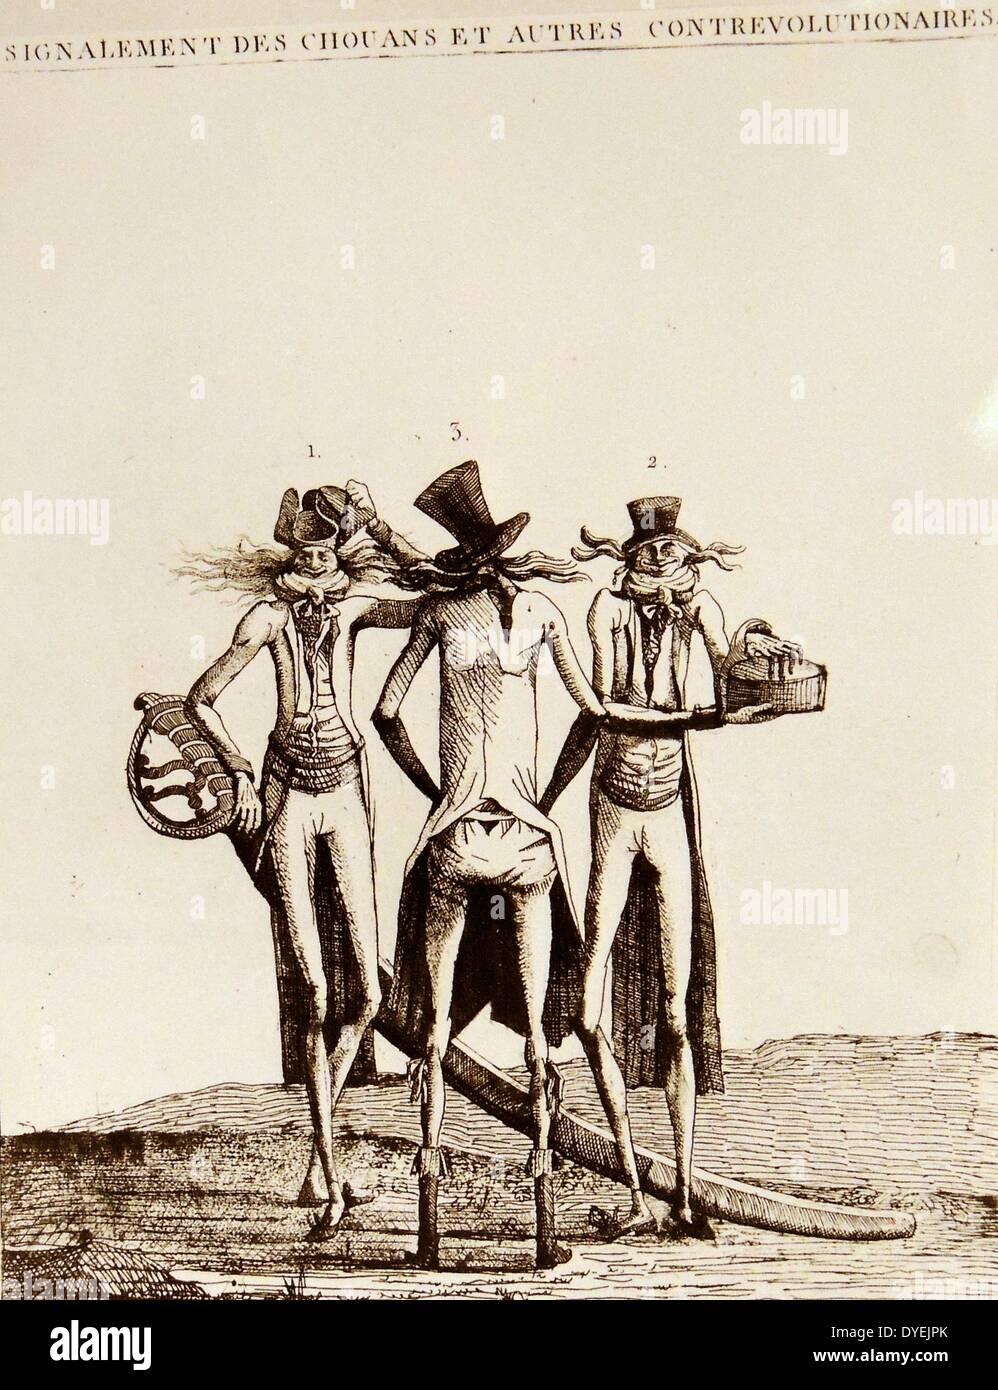 Signalement de chouans et autre contre-revolutionnaires Caricature, print, 1793. France, 18e siècle. La Caricature. Banque D'Images